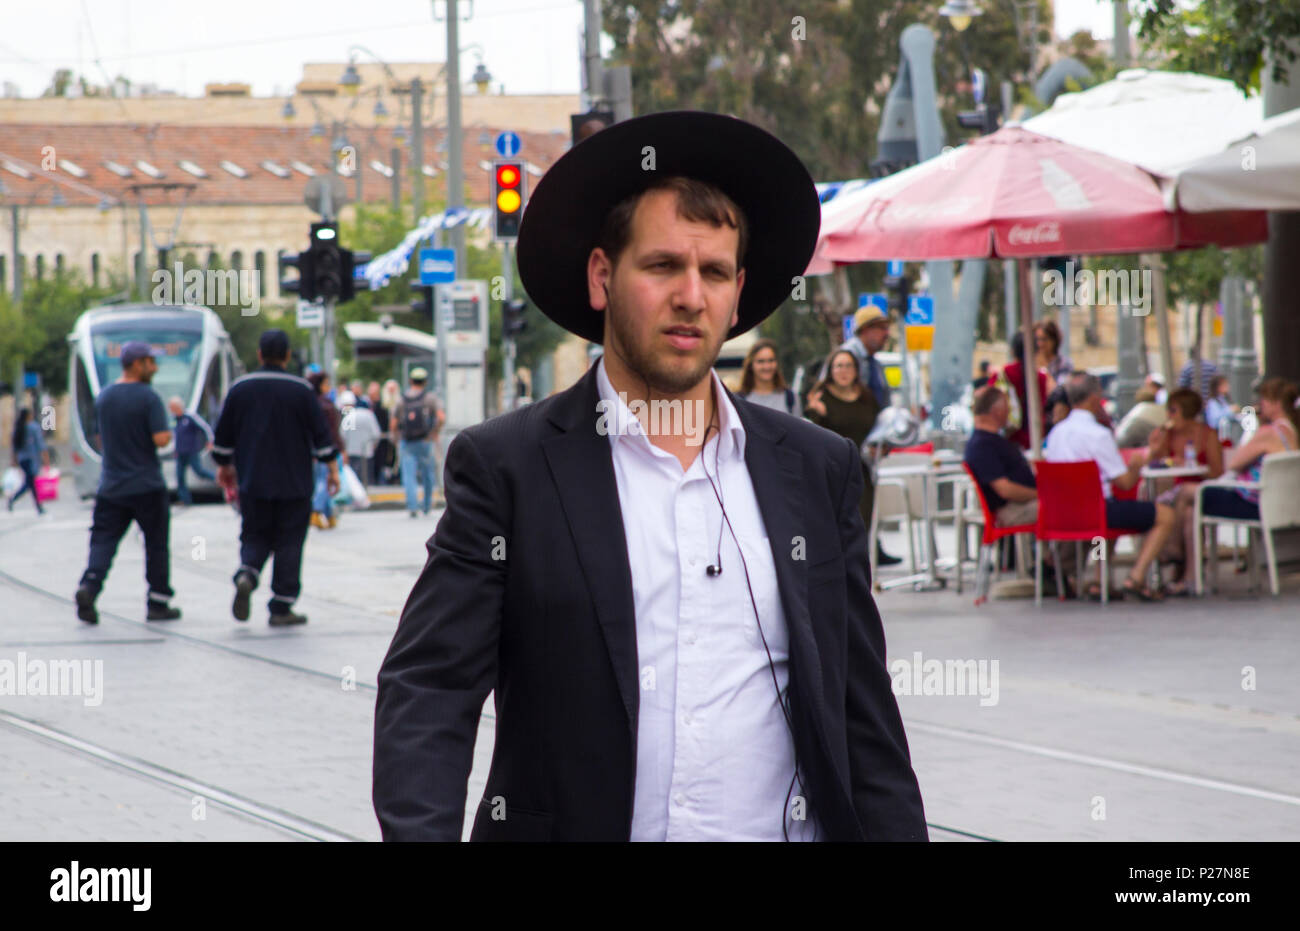 9 mai 2018 un jeune Juif hassidique orthodoxe rasé en costume traditionnel à pied dans une rue animée de Jérusalem Israël Banque D'Images